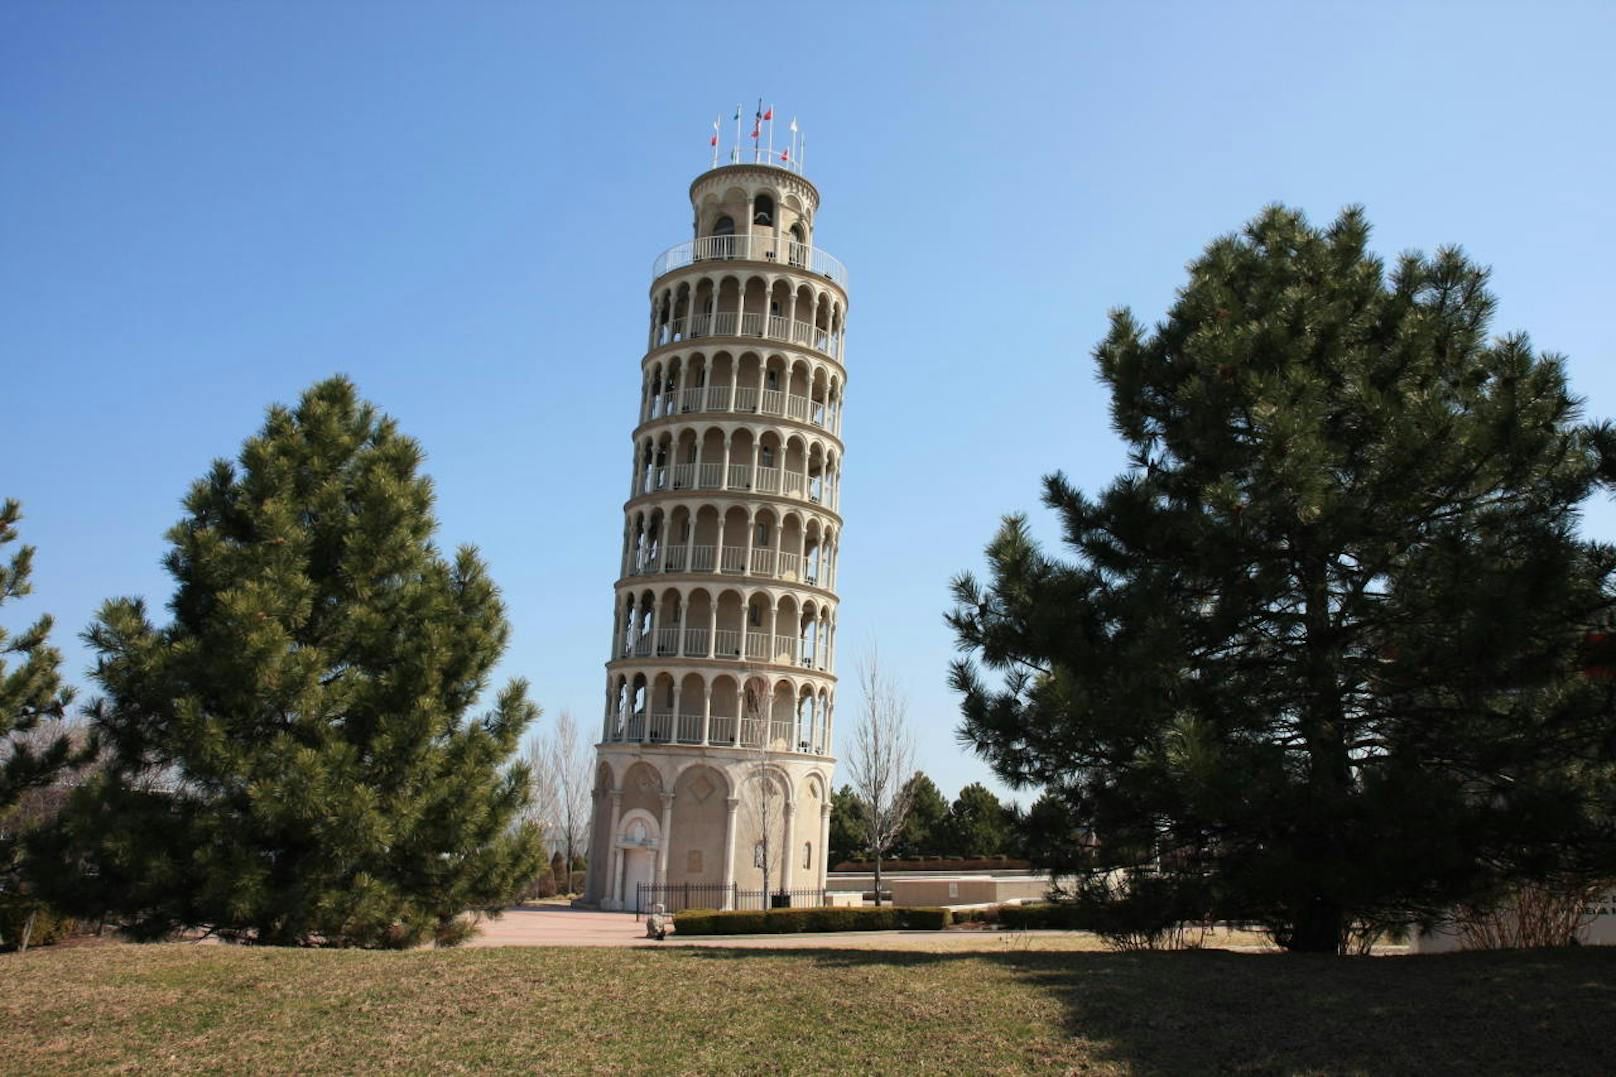 <b>Der amerikanische Schiefe Turm:</b>
Das amerikanische Pendant des Schiefen Turms von Pisa wurde 1934 fertiggestellt und es wird vermutet, dass er damals ursprünglich als Wassertank für ein Schwimmbecken diente. Die Städtepartnerschaft kam erst 1991 zustande, vielleicht auch aufgrund der gemeinsamen Vorliebe für Bauten in Schräglage.